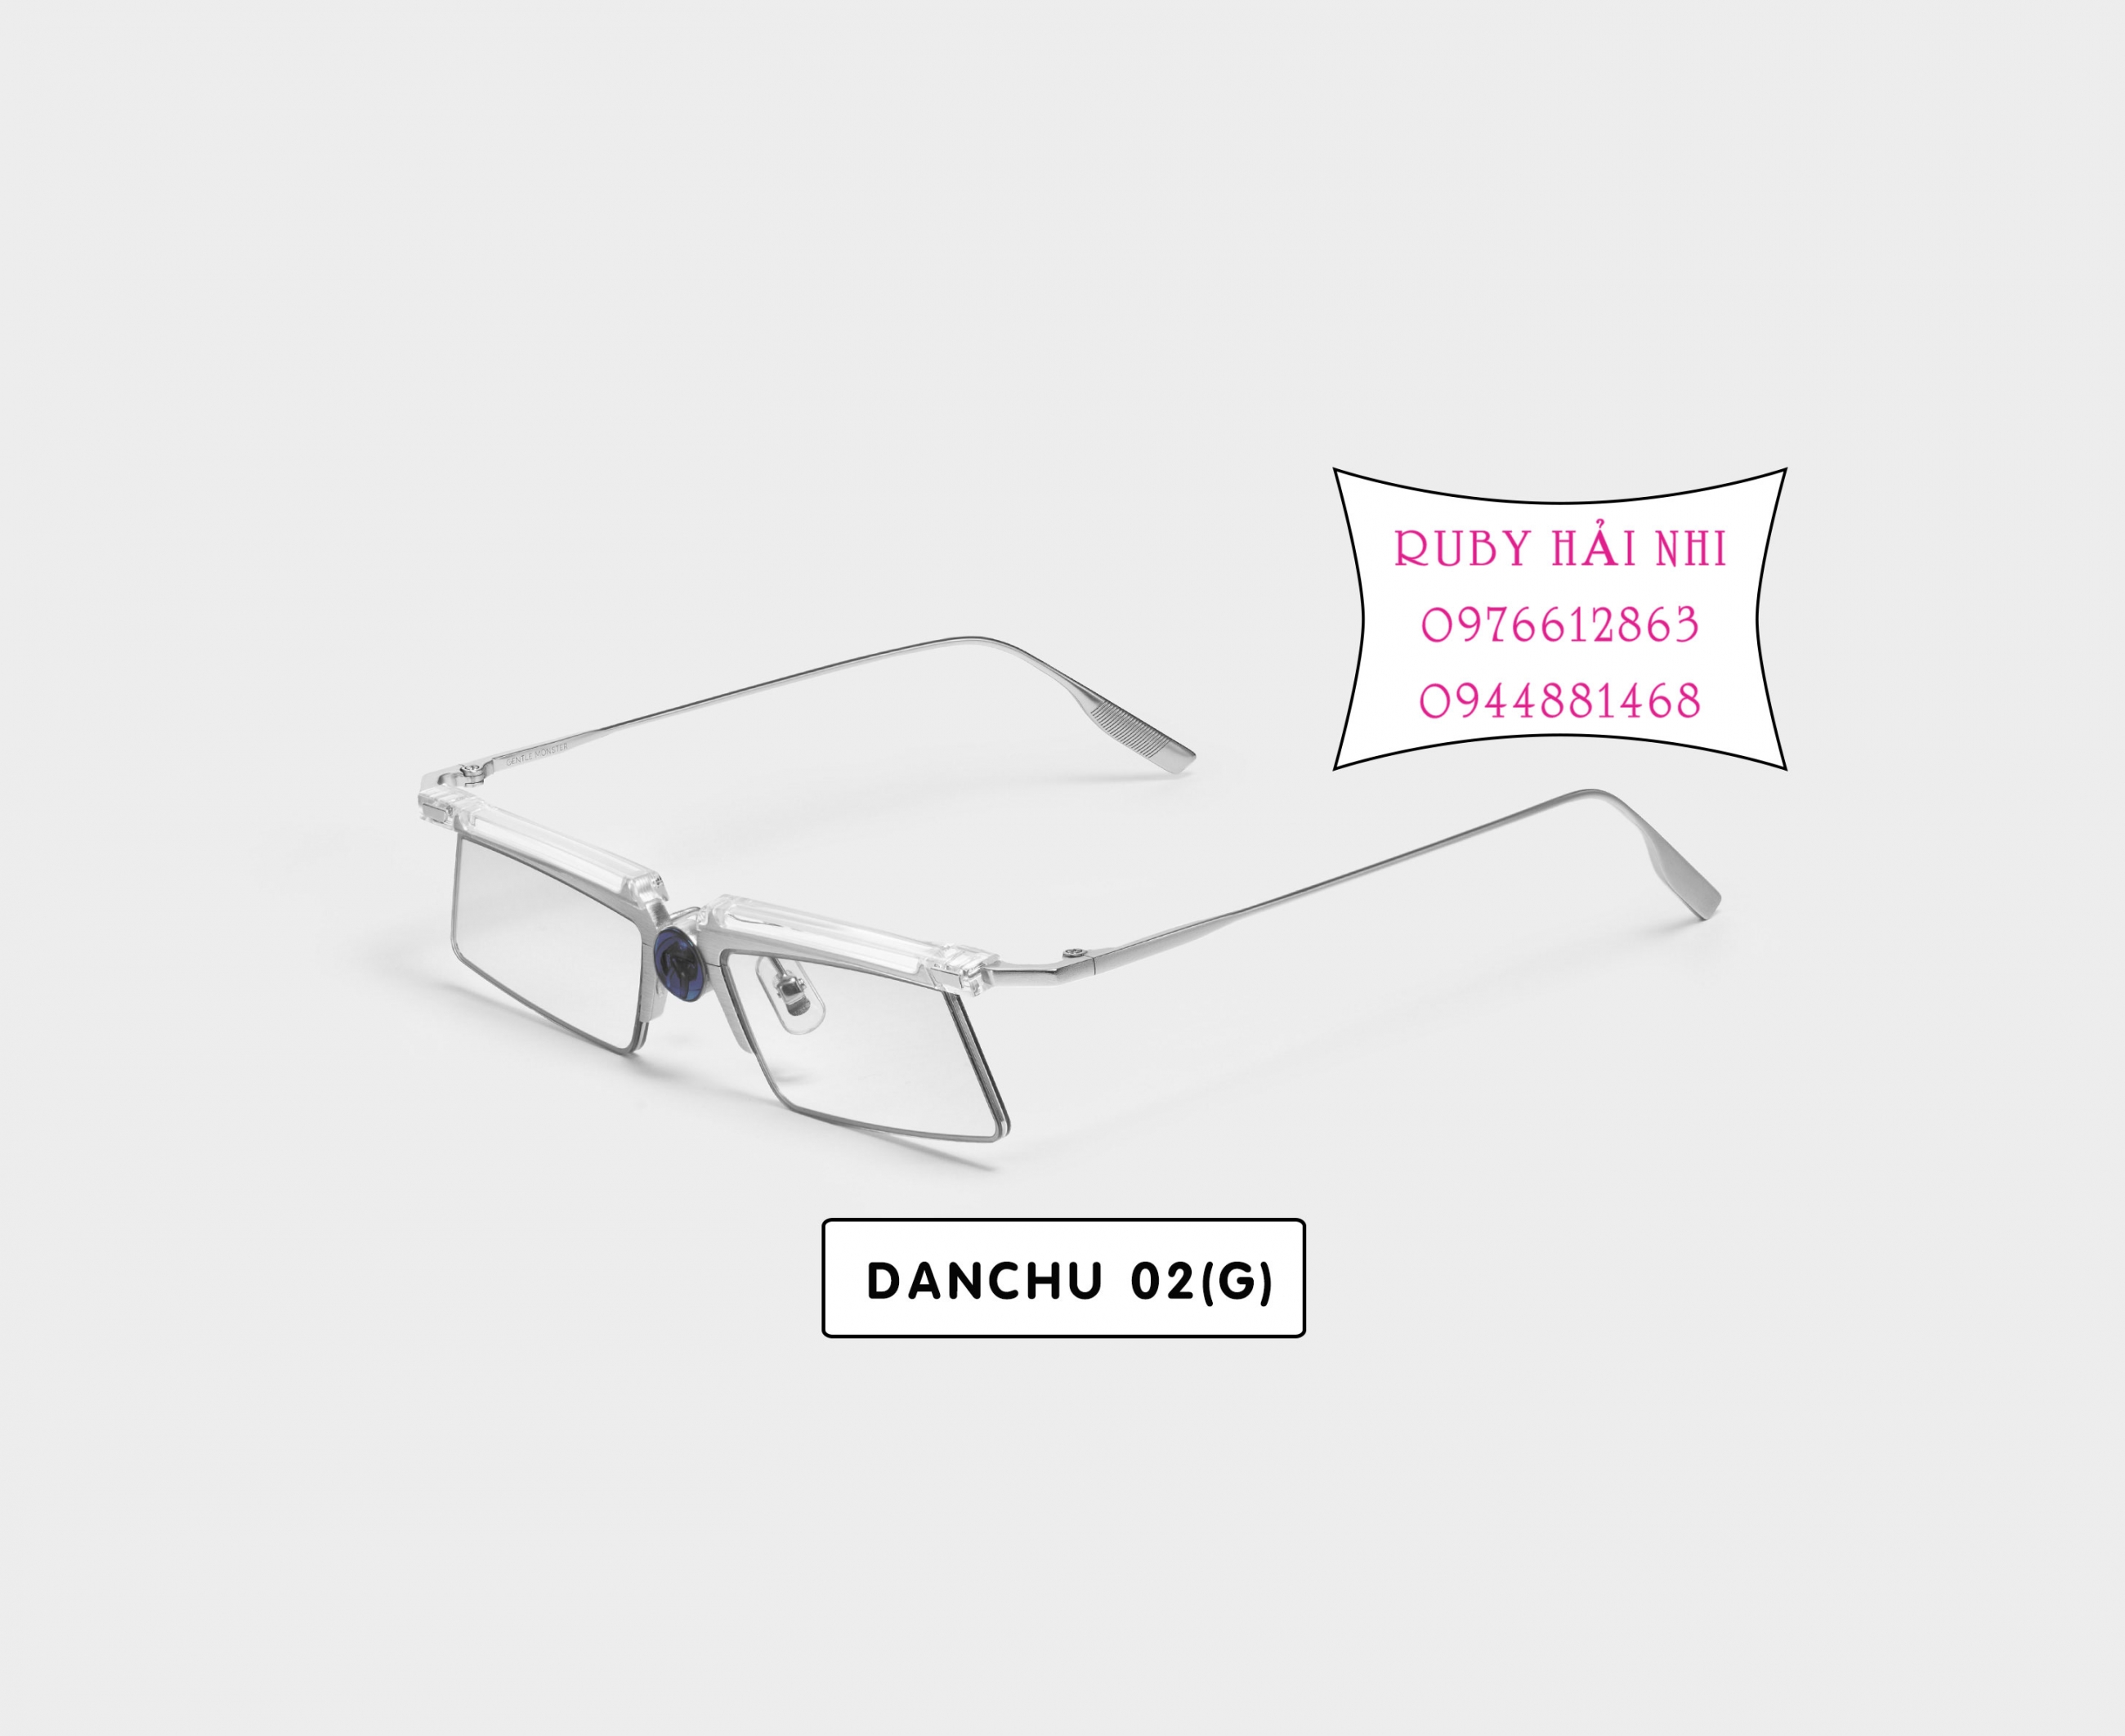 DANCHU_02(G)_2